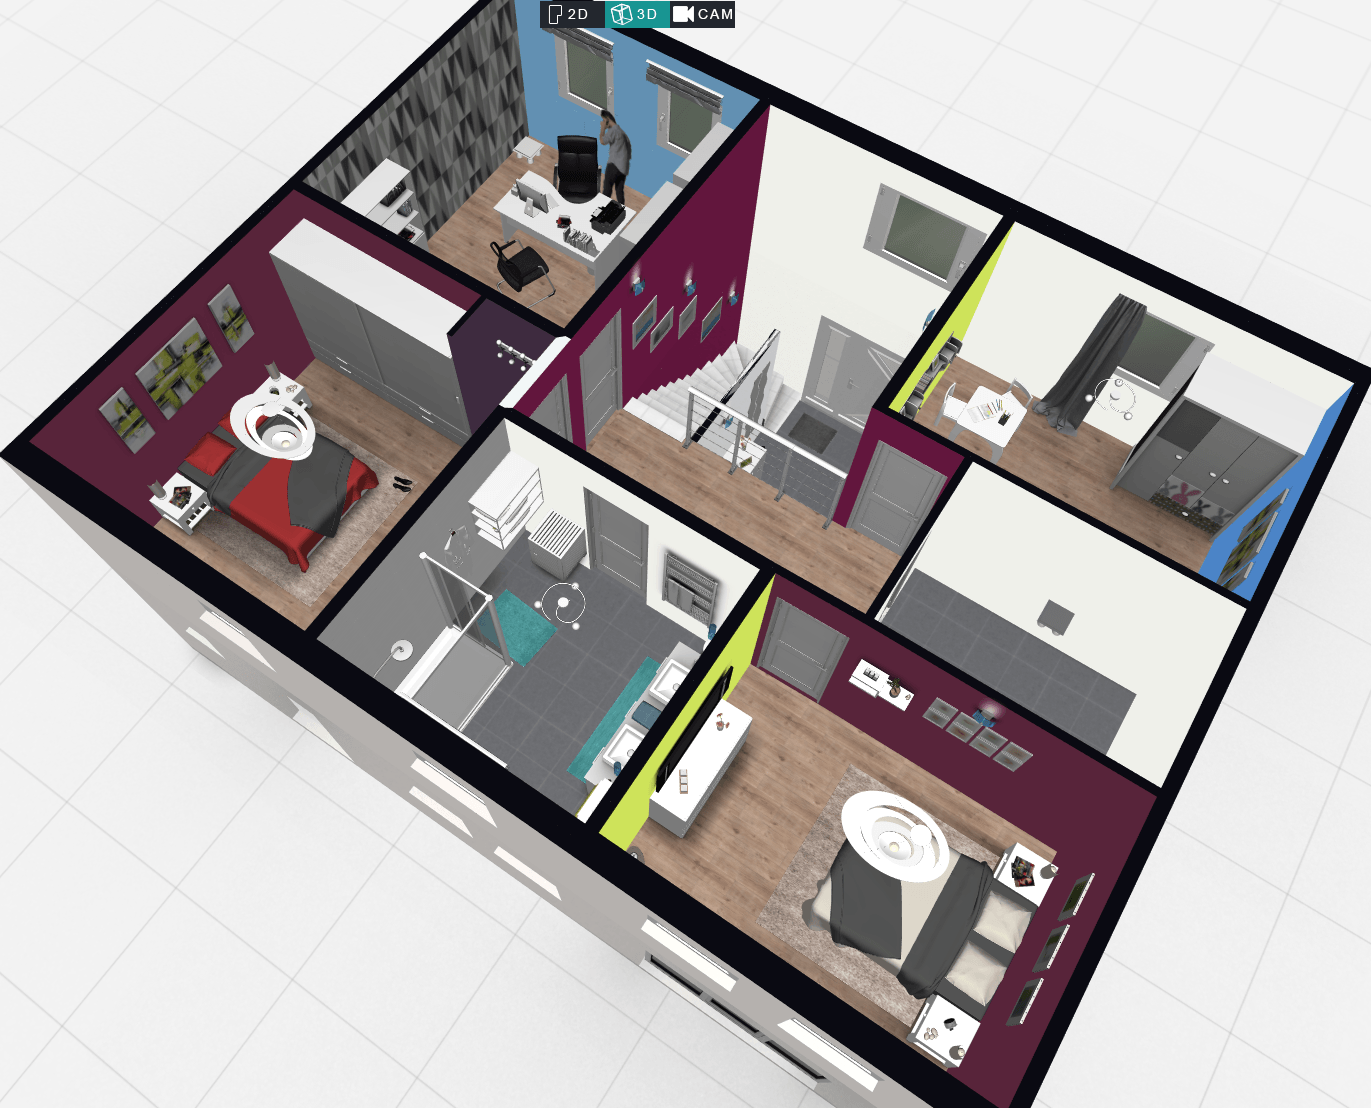 Dessin 3D, visite virtuelle à partir de plan 2D/architecte - MultiShop.lu